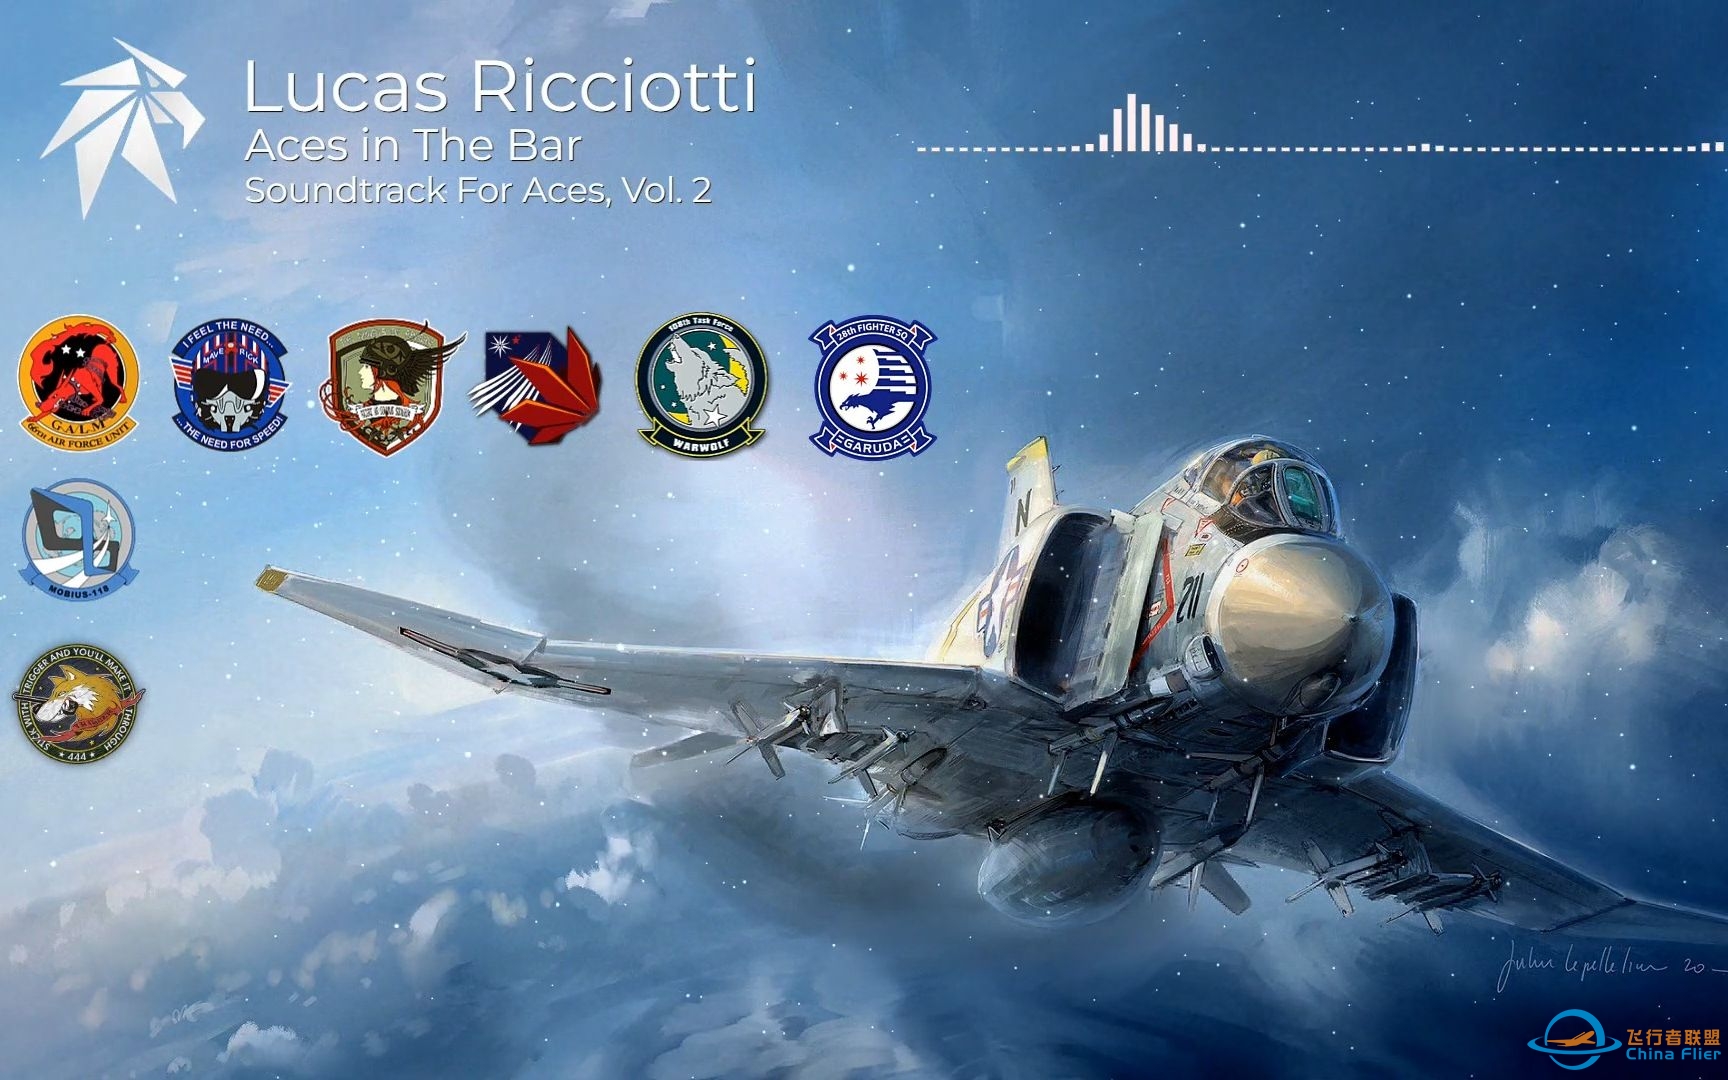 【转载】酒吧里的王牌 - 壮志凌云、皇牌空战、僚机计划（混合曲）-Lucas Ricciotti-2849 